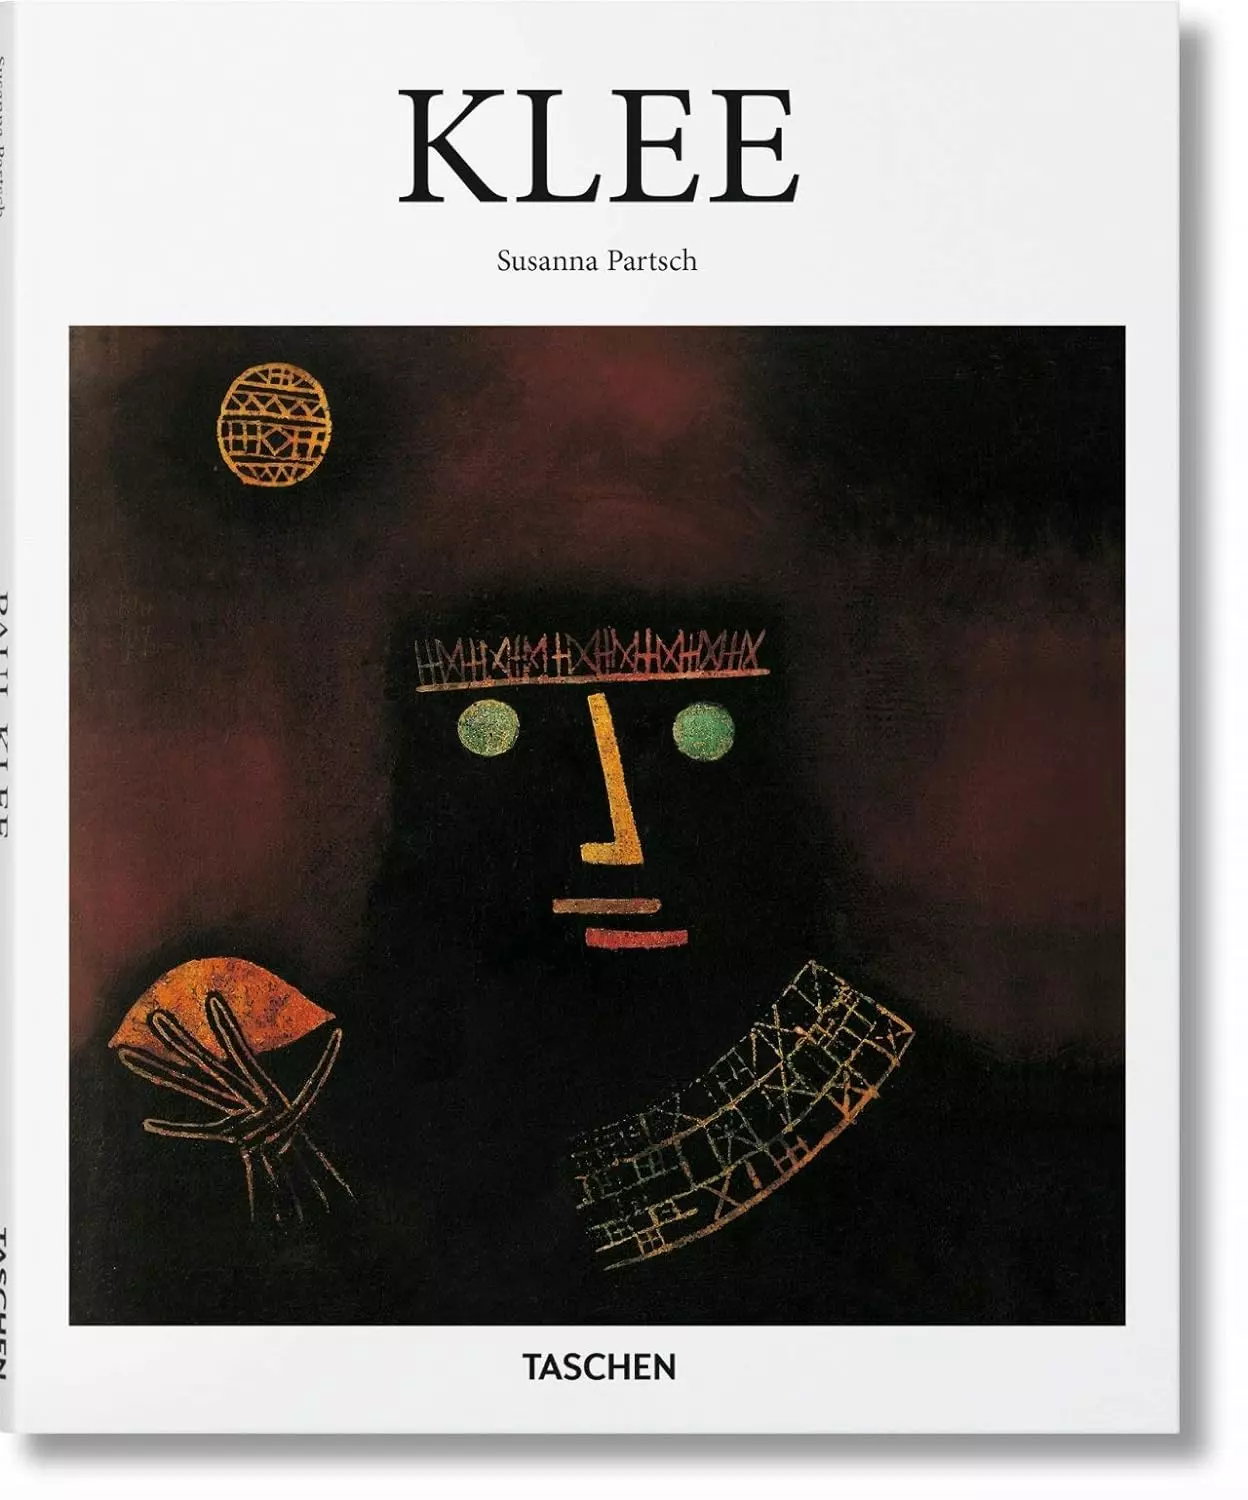 Парч Сюзанна - Klee